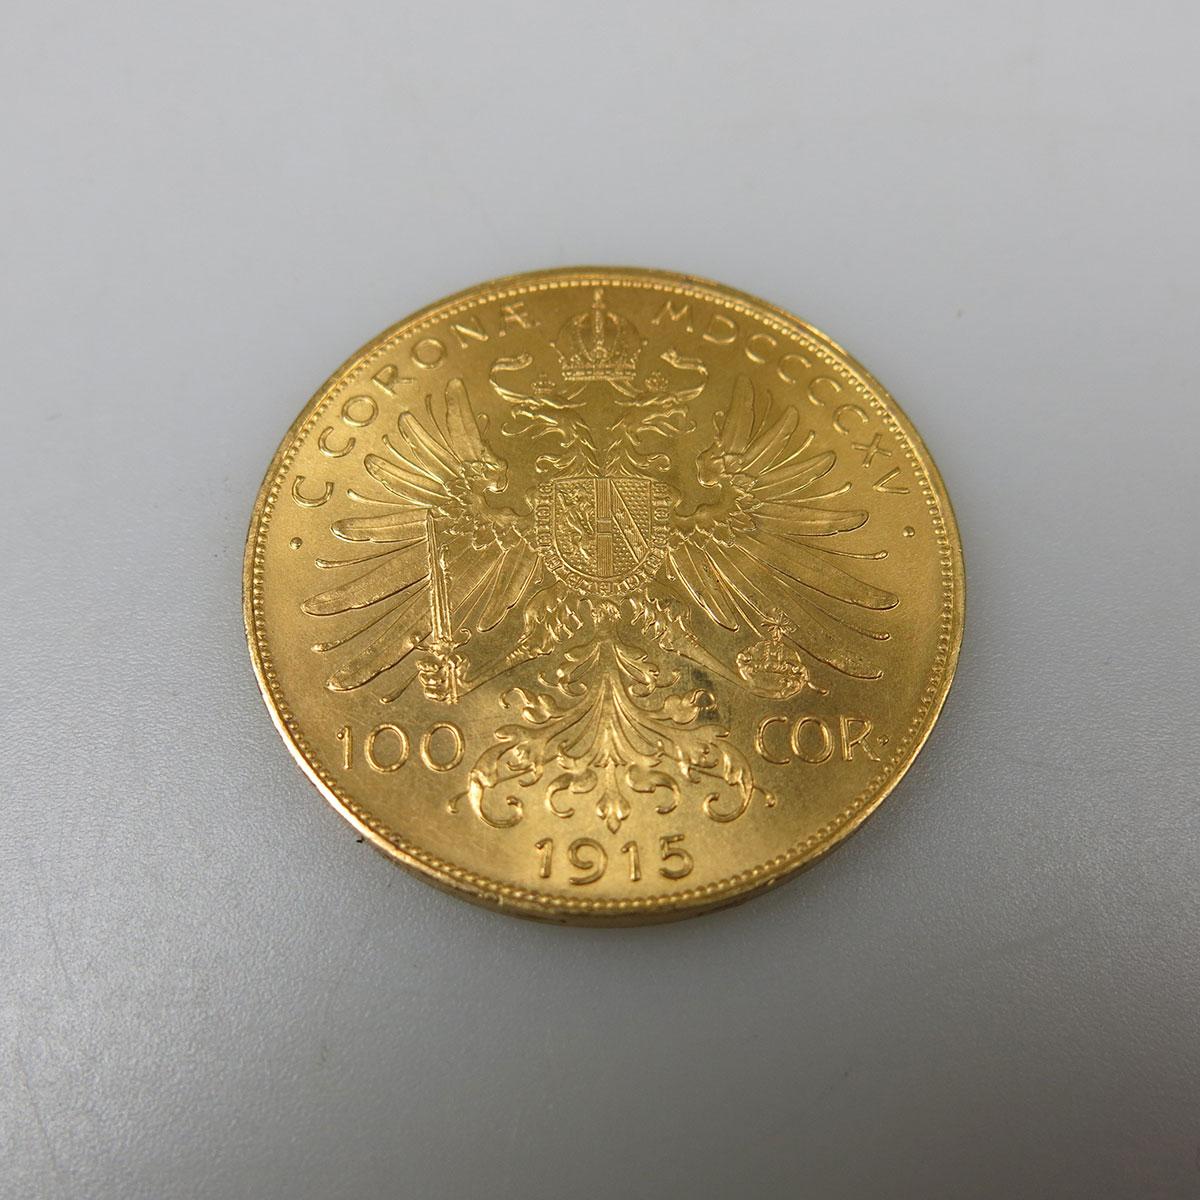 Austrian 100 Corona Gold Coin 1915